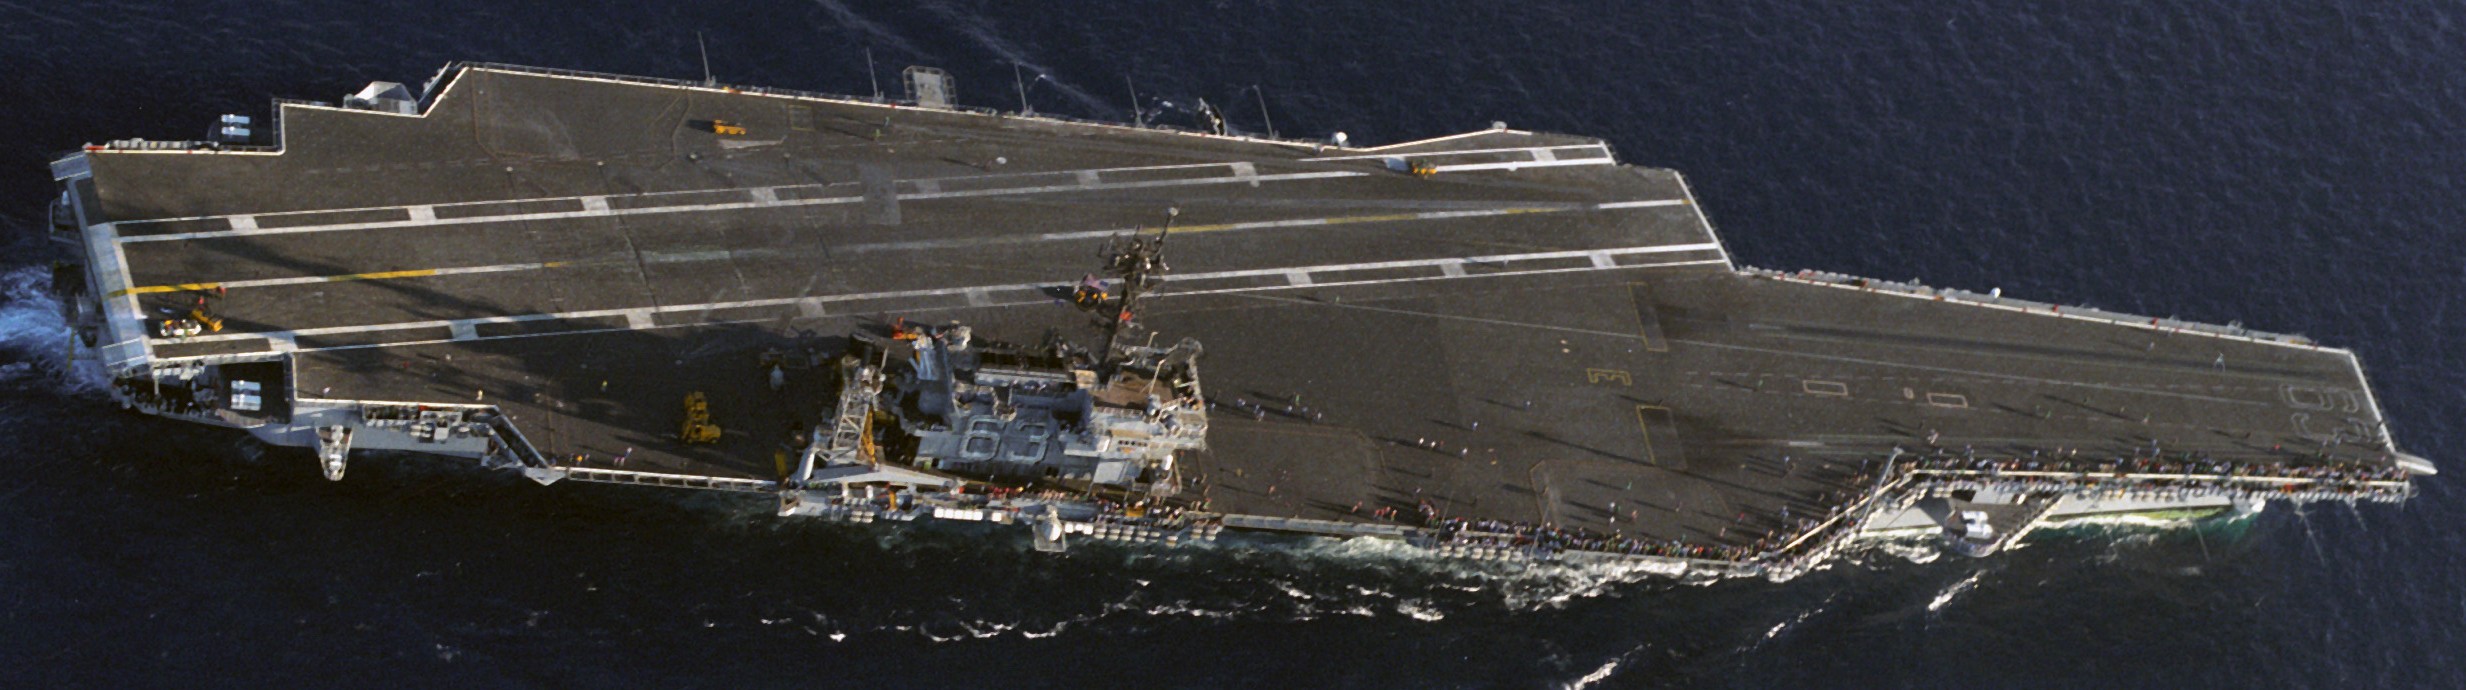 cv-63 uss kitty hawk aircraft carrier 460 flight deck